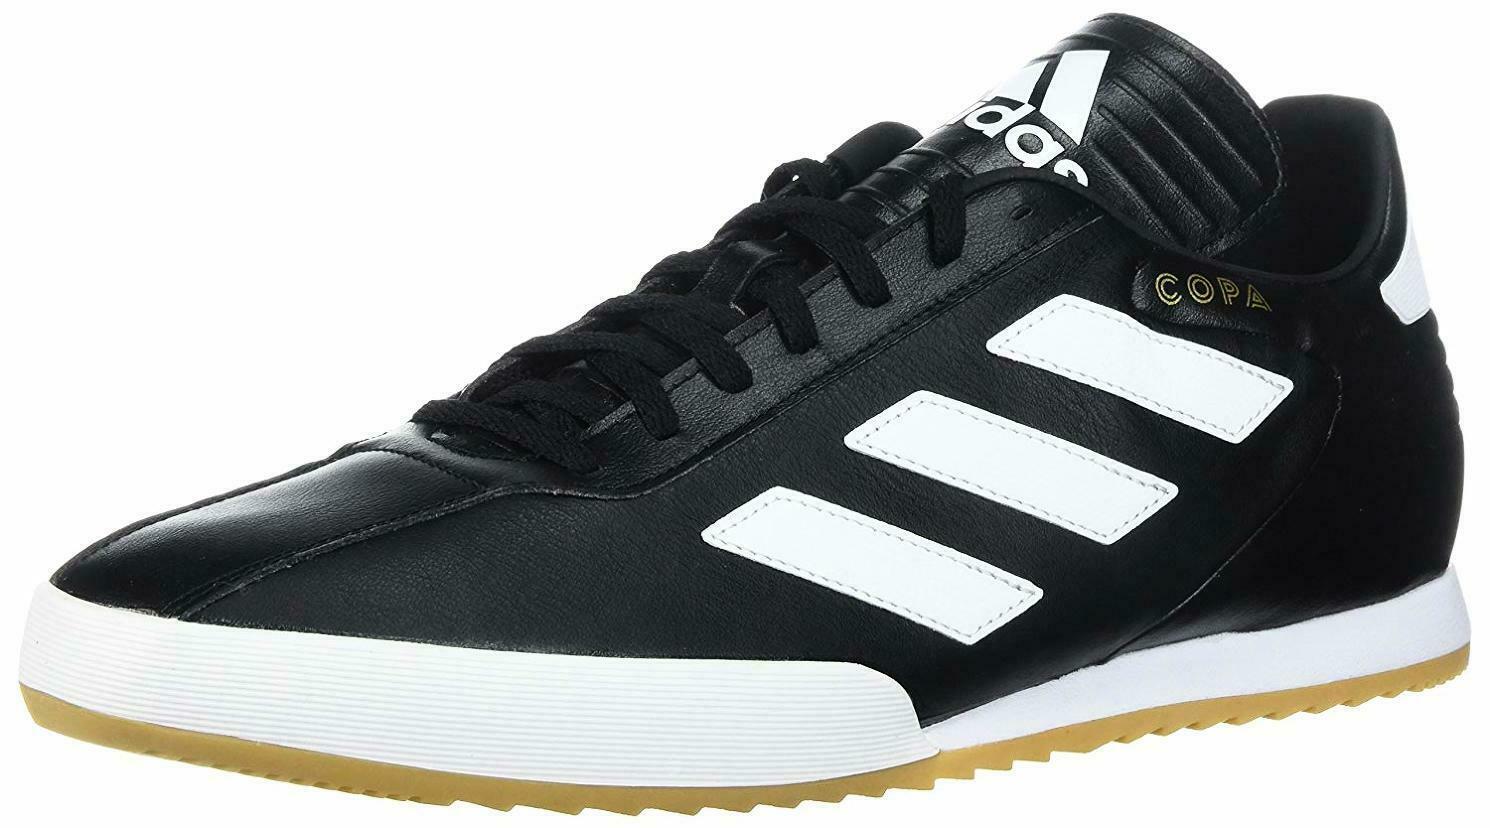 adidas Originals Men's Copa Super Soccer Shoe - Choose SZ/Color - £57.80 GBP - £95.54 GBP